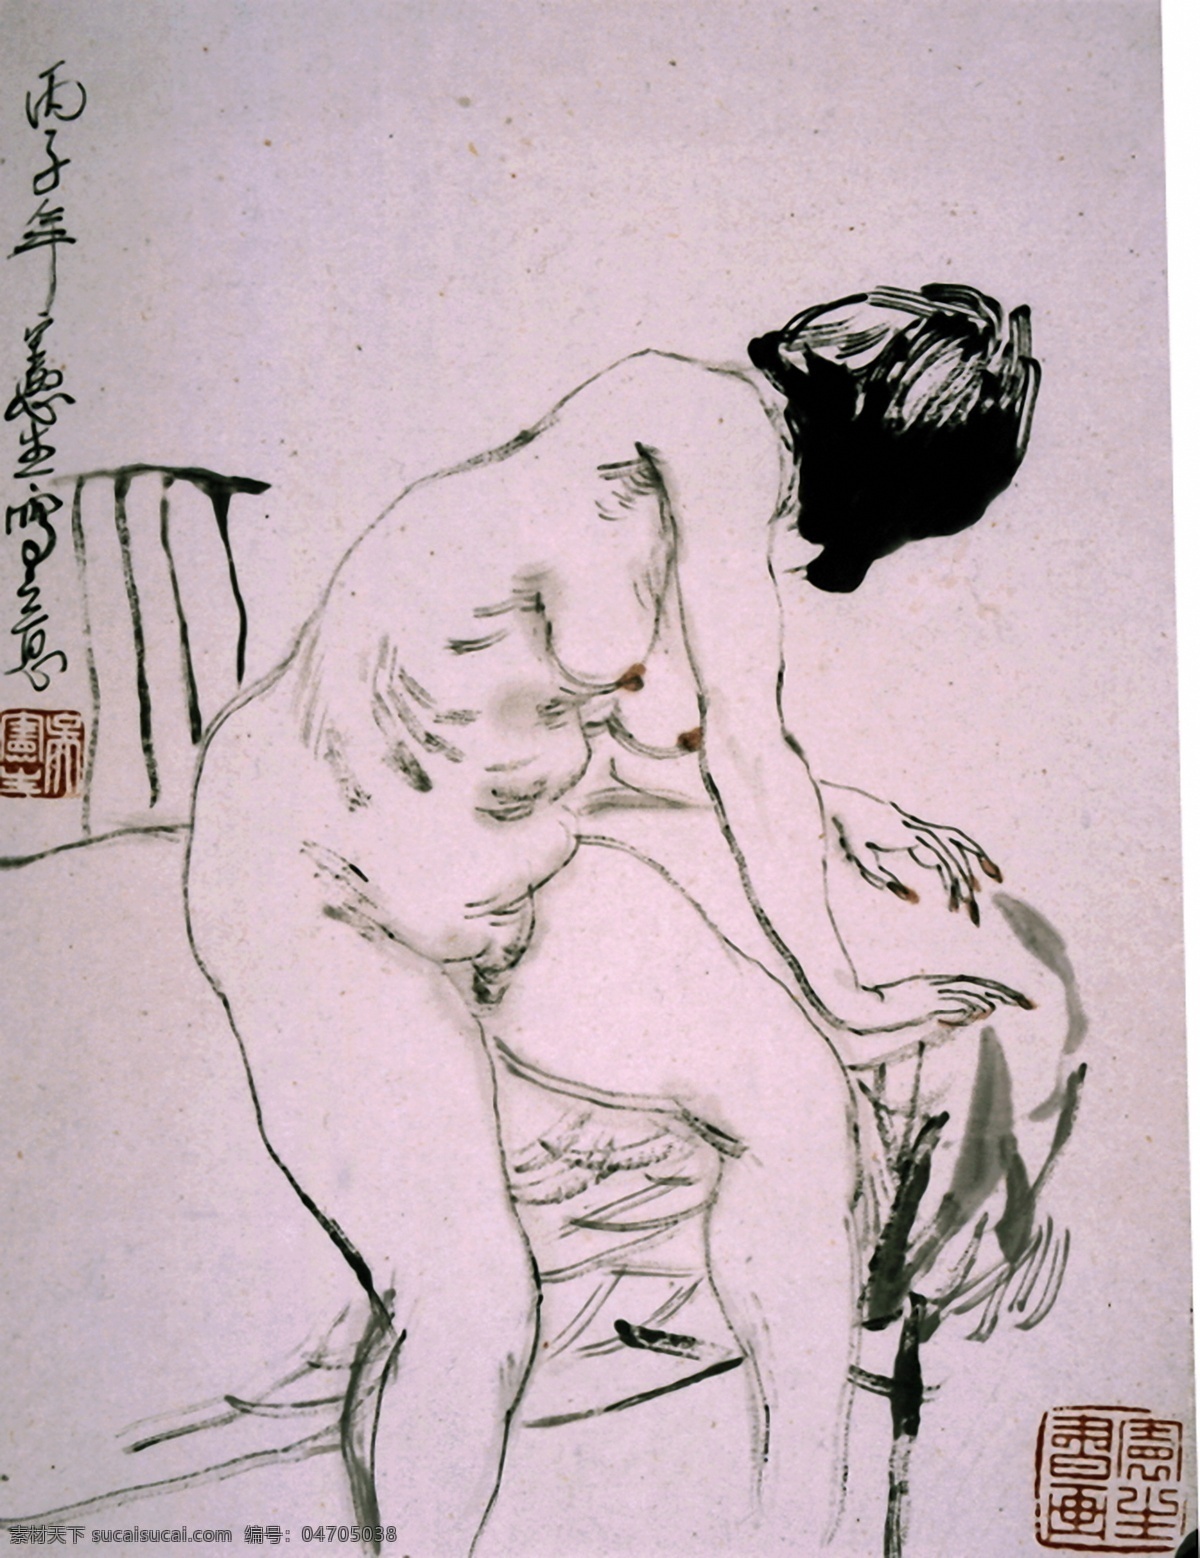 写意人体 国画0080 国画 设计素材 人物画篇 中国画篇 书画美术 灰色